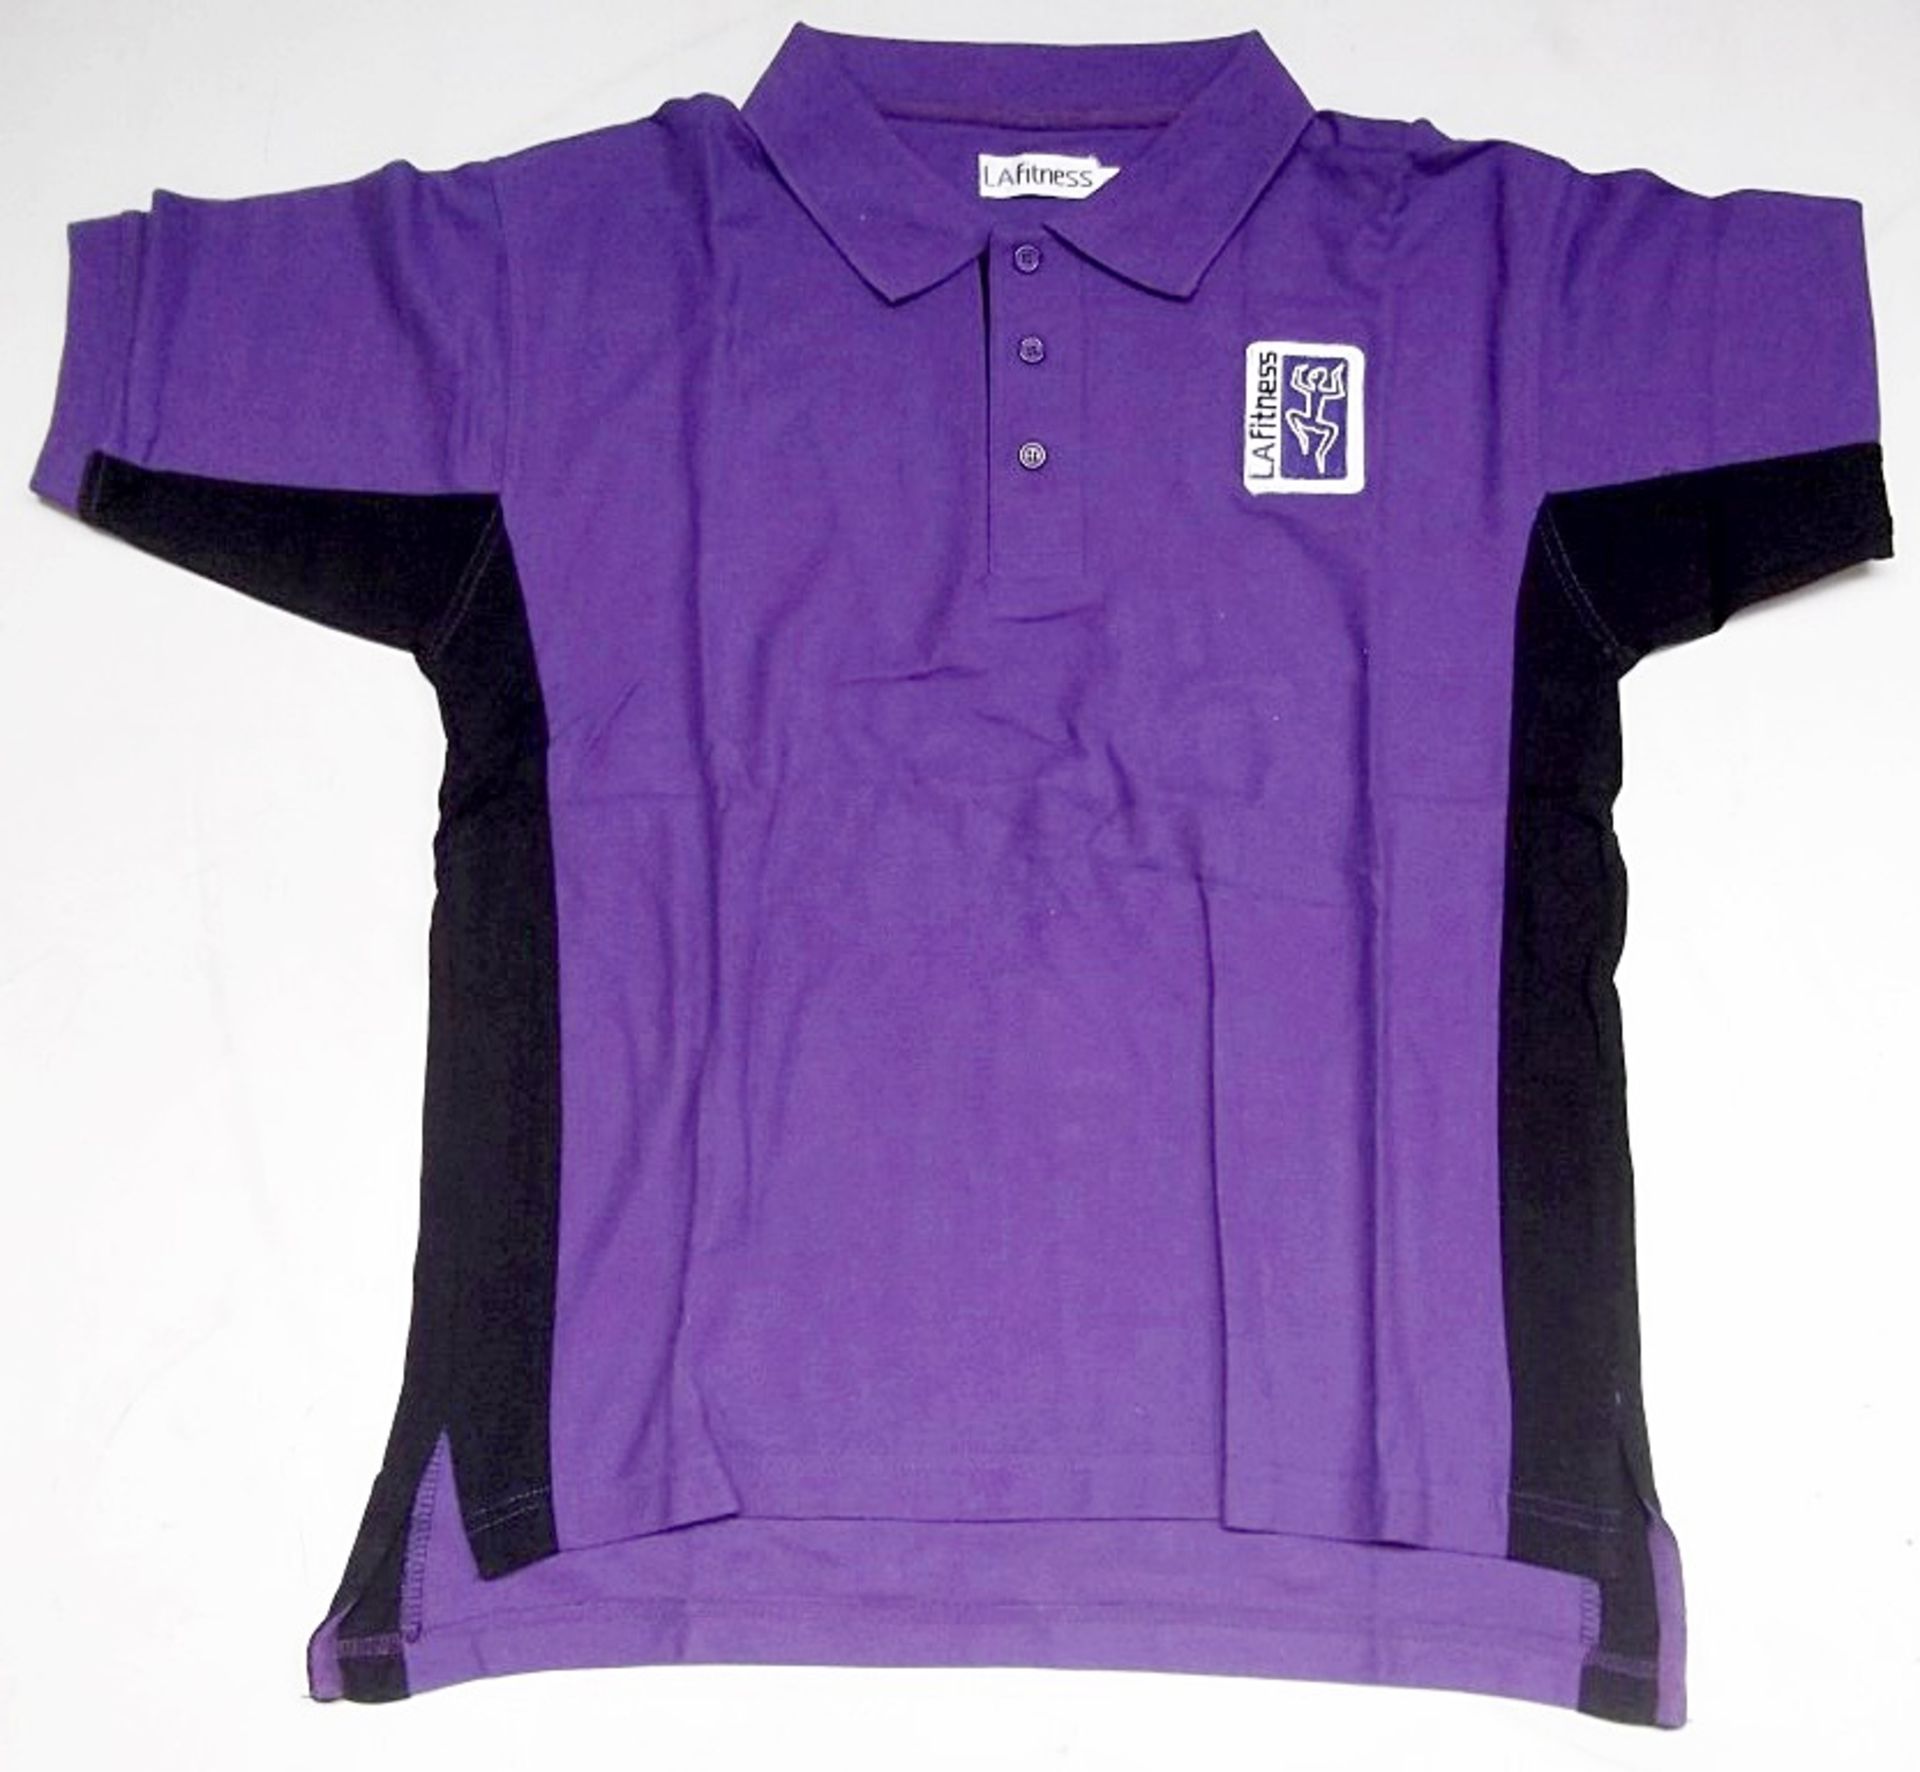 55 x LA Fitness Branded Ladies POLO Shirts - Size: Large - Colour: Purple - CL155 - Ref: JIM153 -